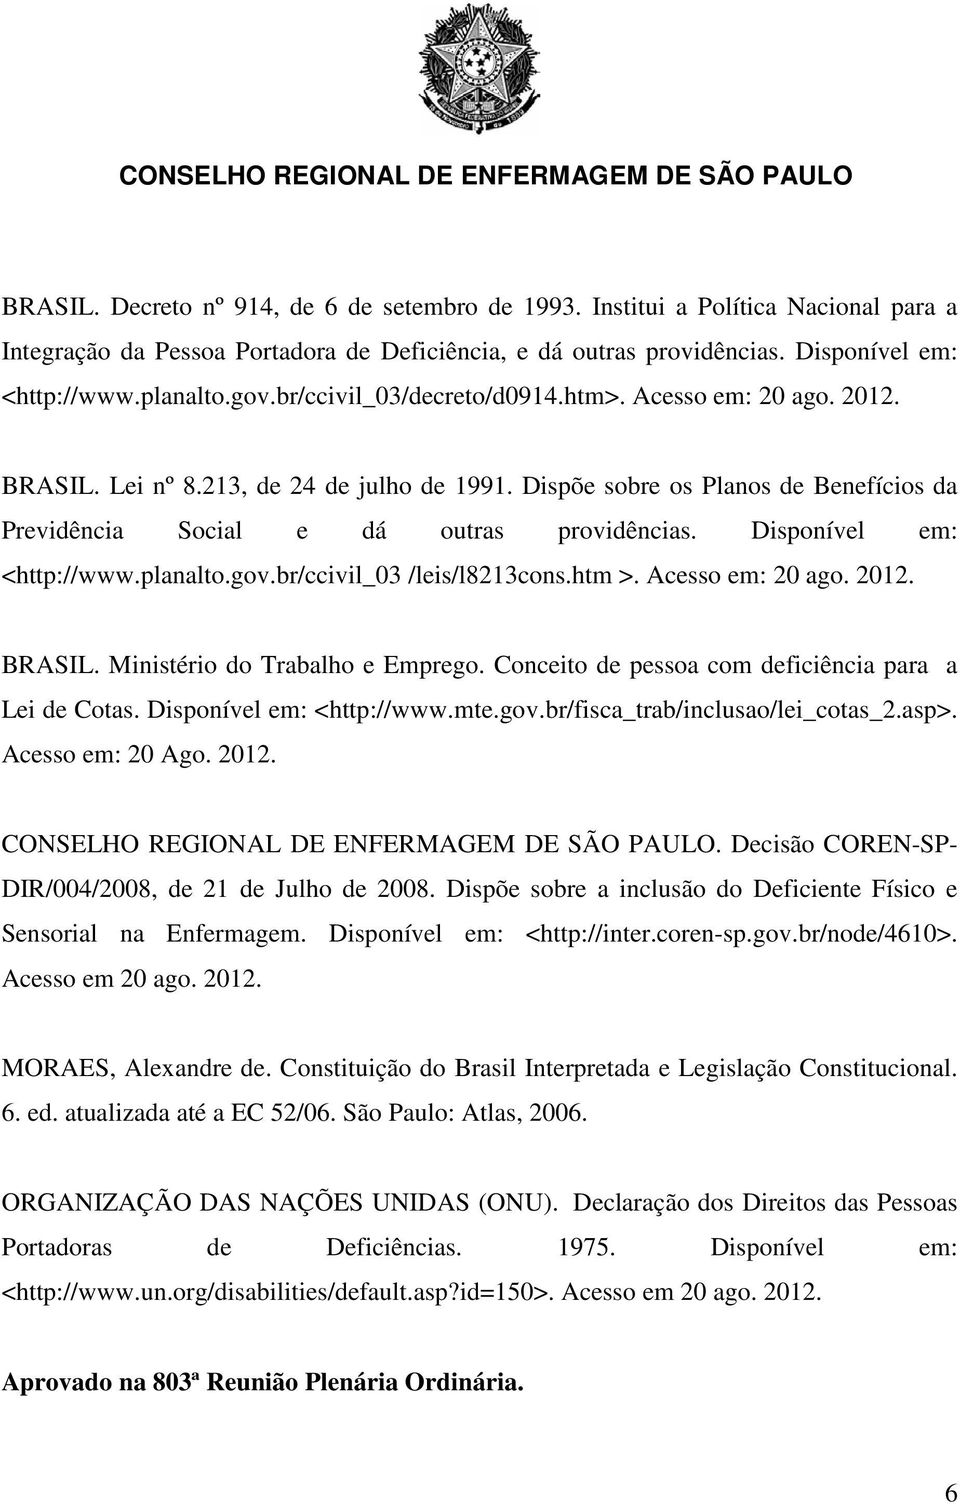 Disponível em: <http://www.planalto.gov.br/ccivil_03 /leis/l8213cons.htm >. Acesso em: 20 ago. 2012. BRASIL. Ministério do Trabalho e Emprego. Conceito de pessoa com deficiência para a Lei de Cotas.